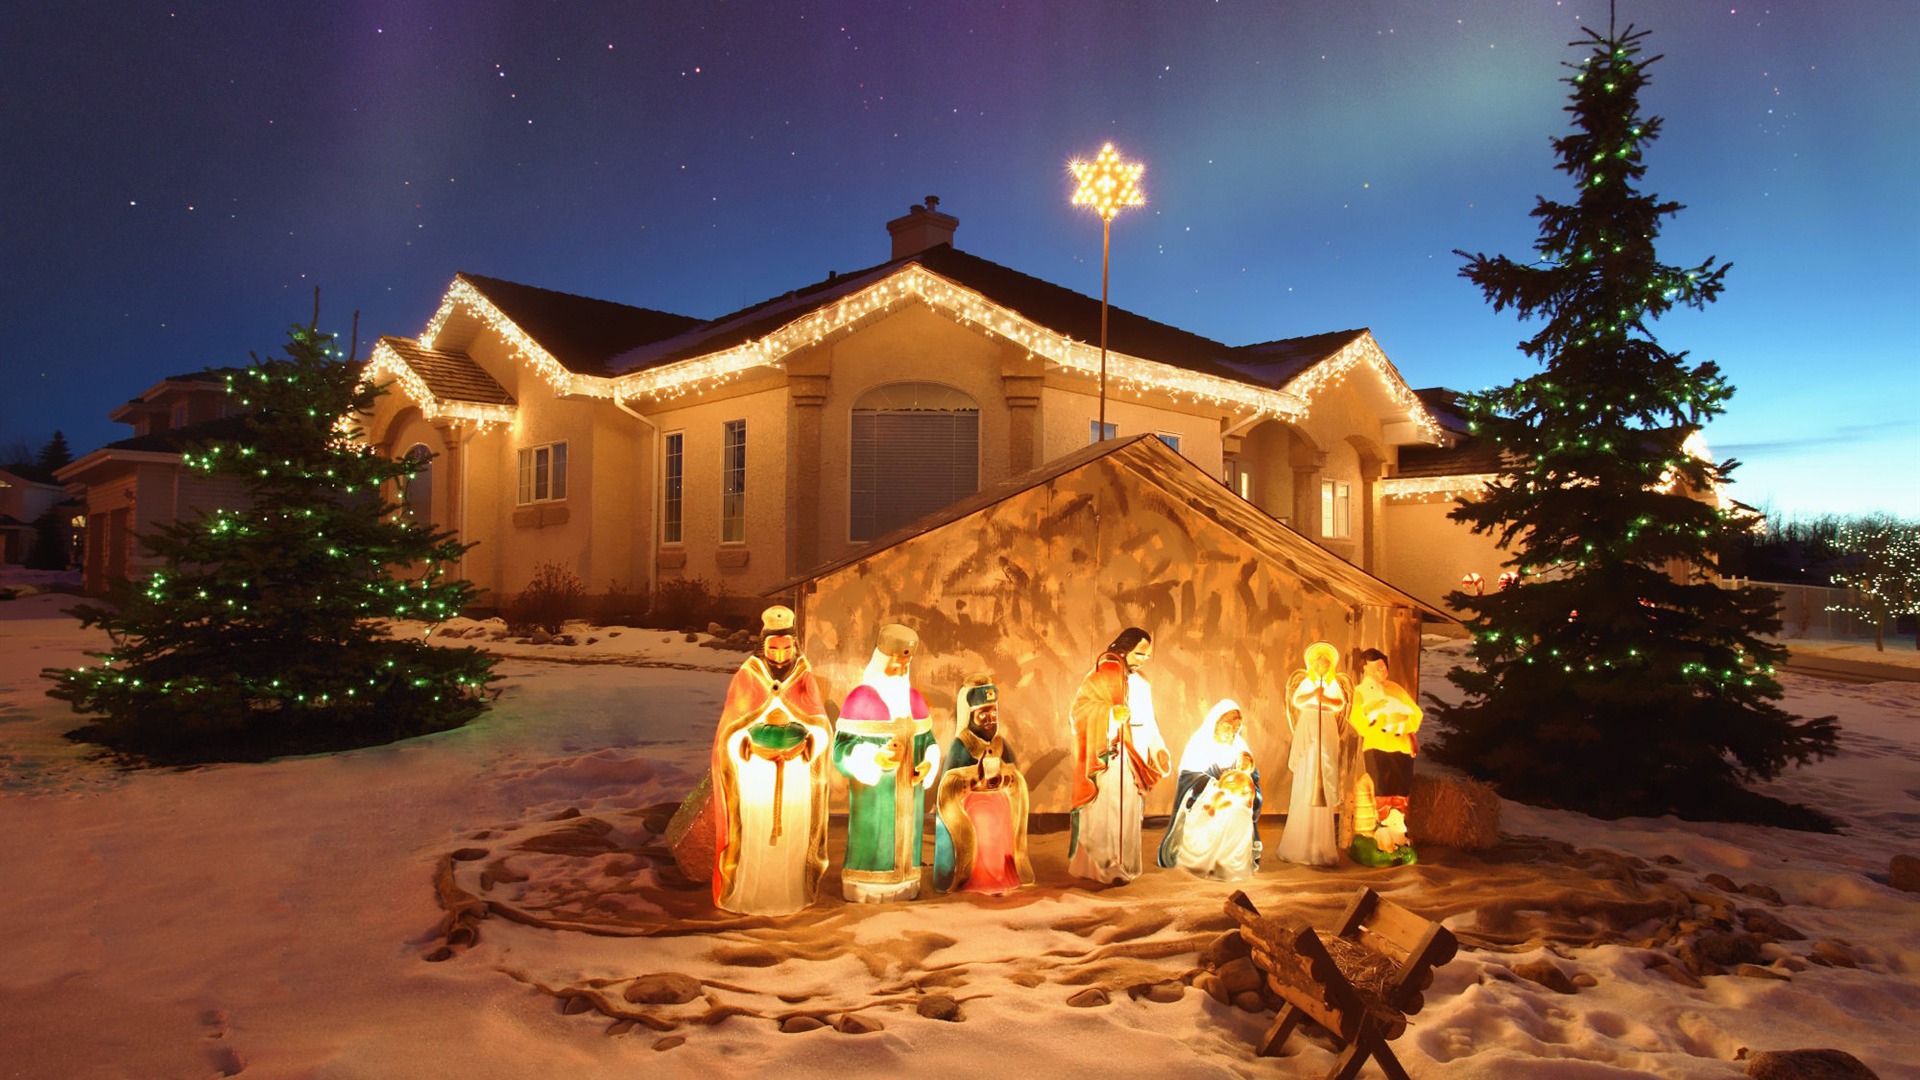 Outdoor Christmas Nativity Scene Merry Desktop Picture Album